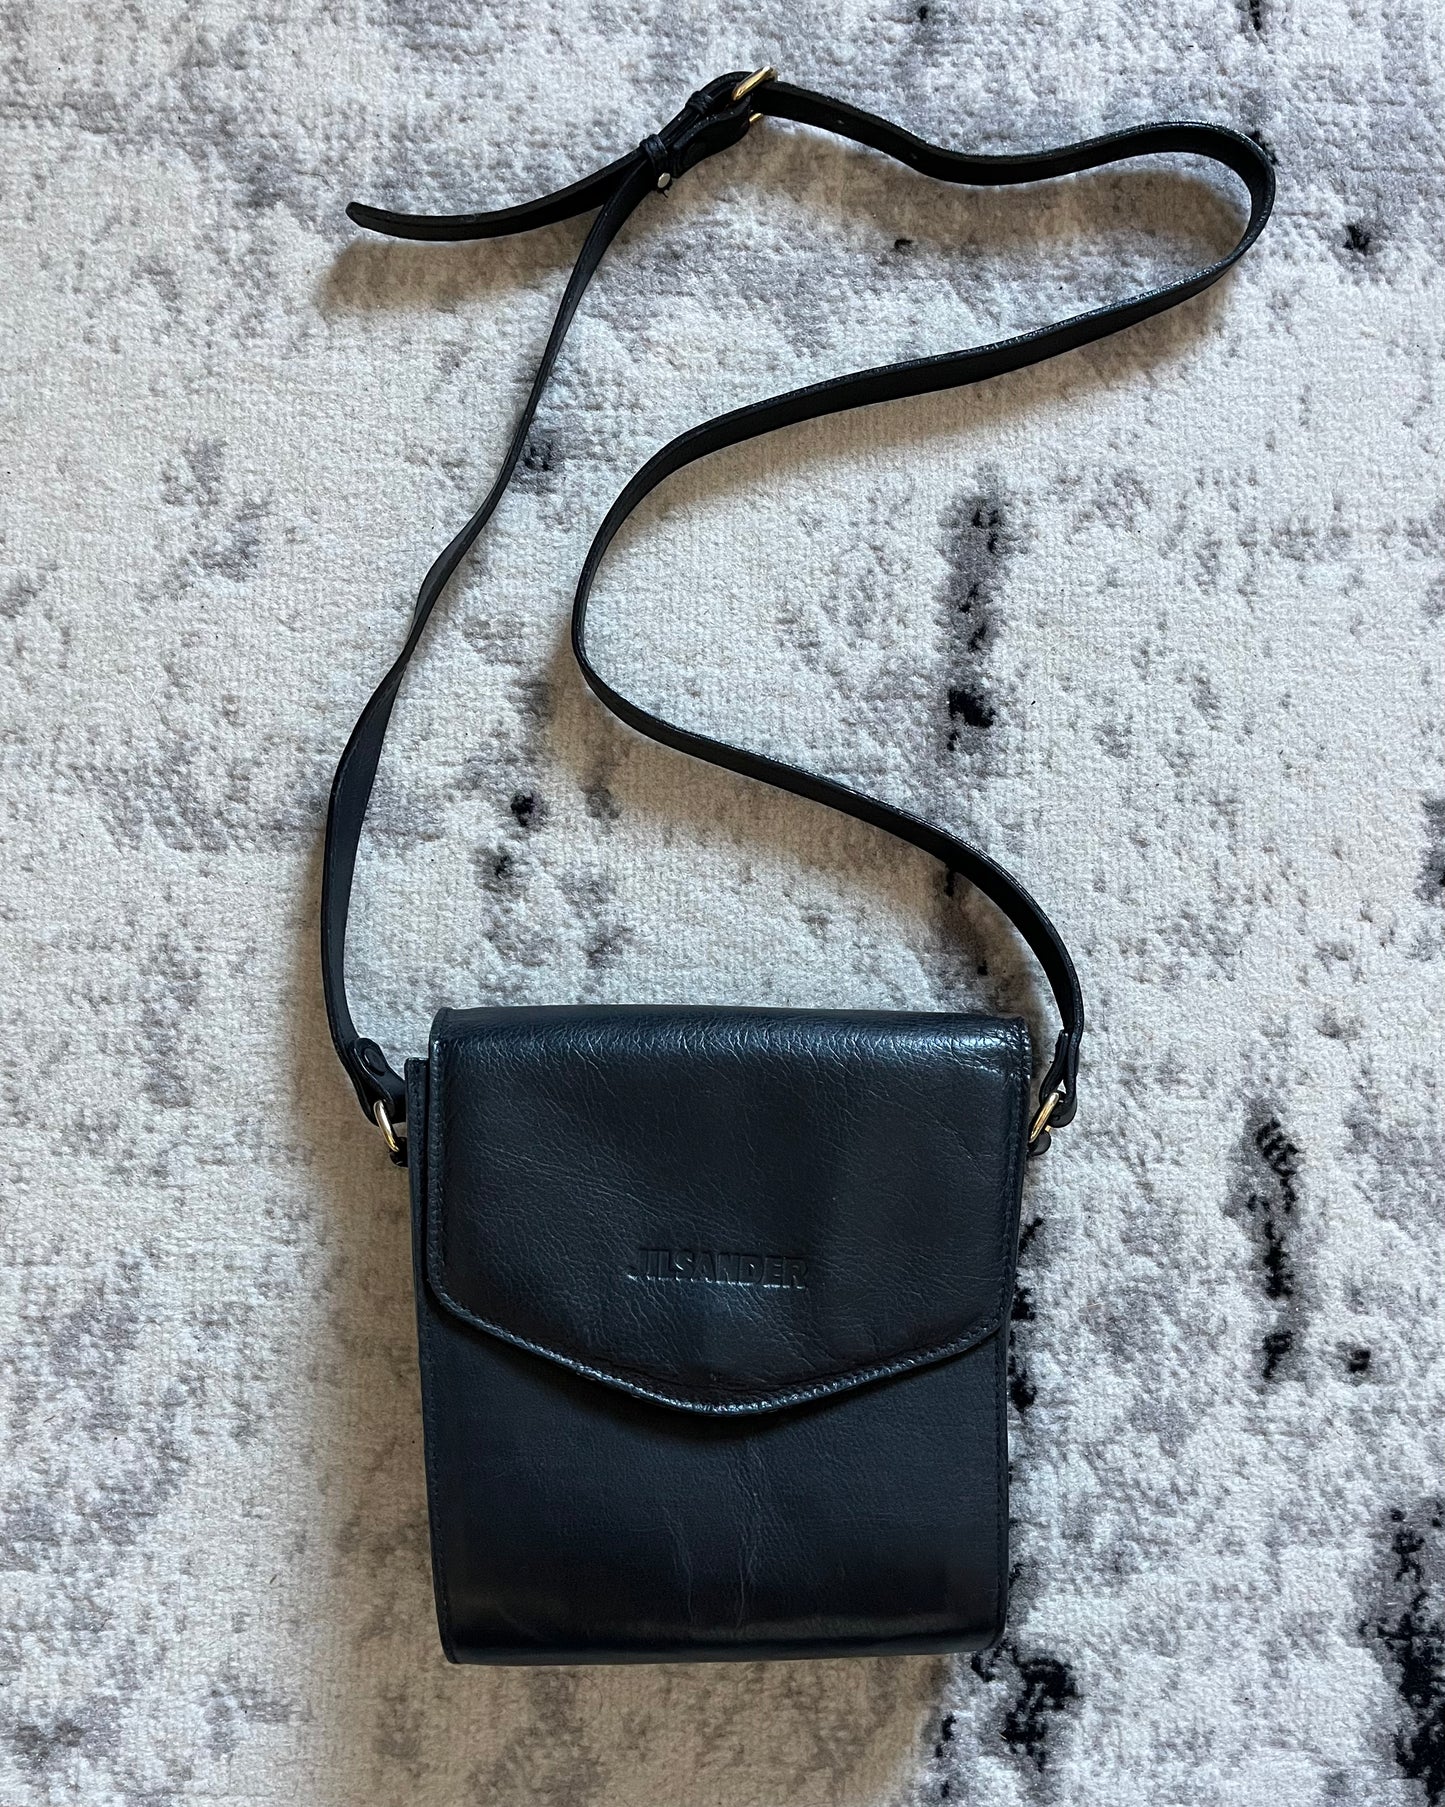 Jil Sander Small Leather Shoulder Bag